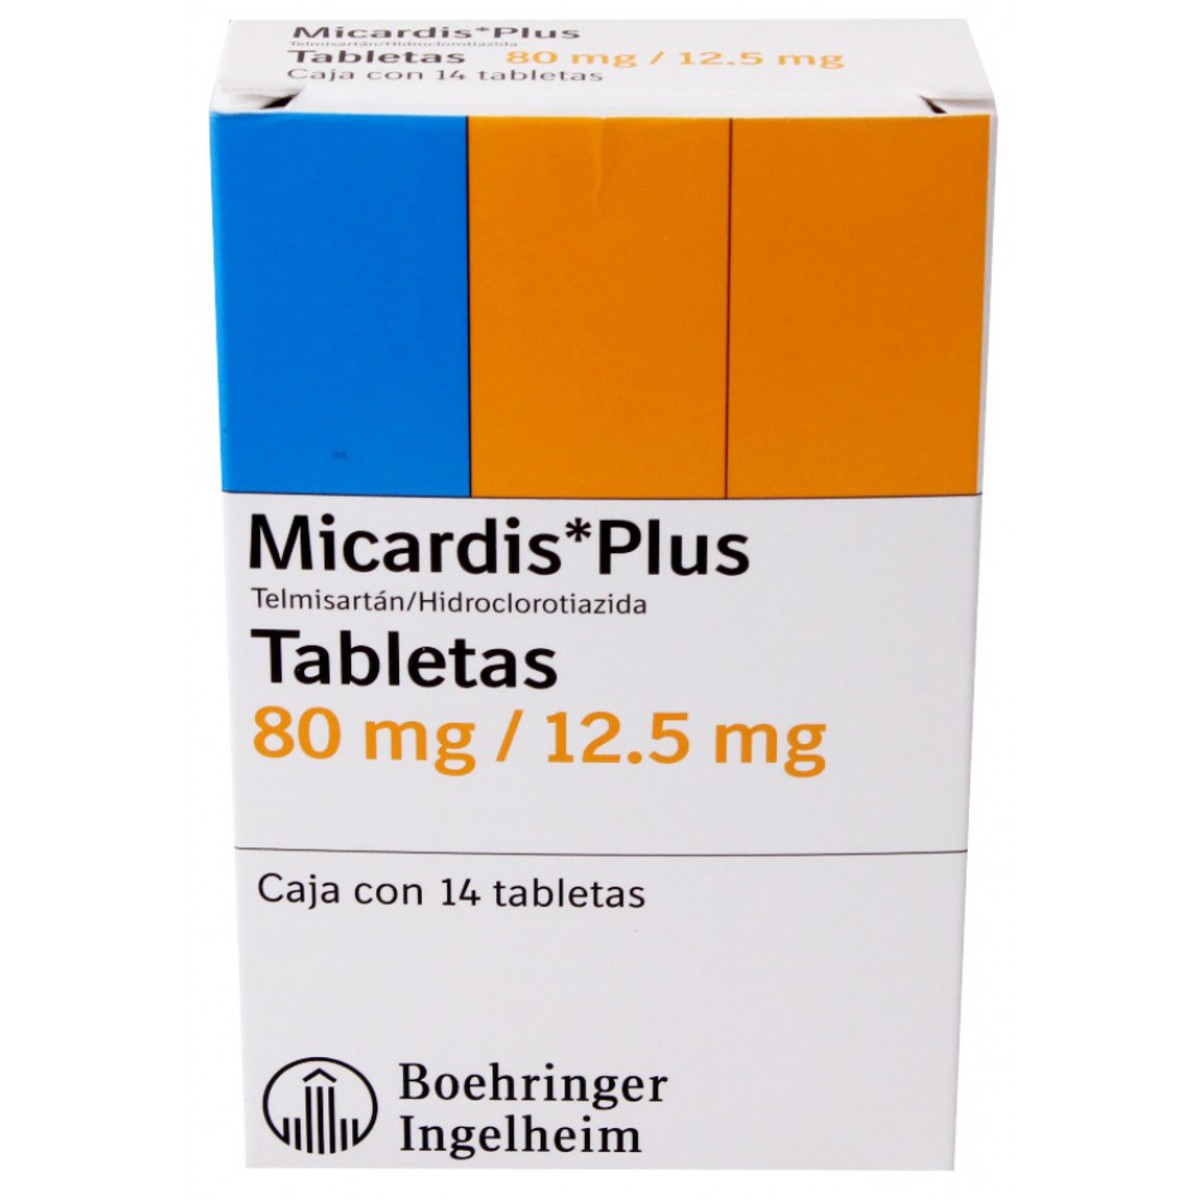 Micardis Plus:¿Qué Es Y Para Qué Sirve?